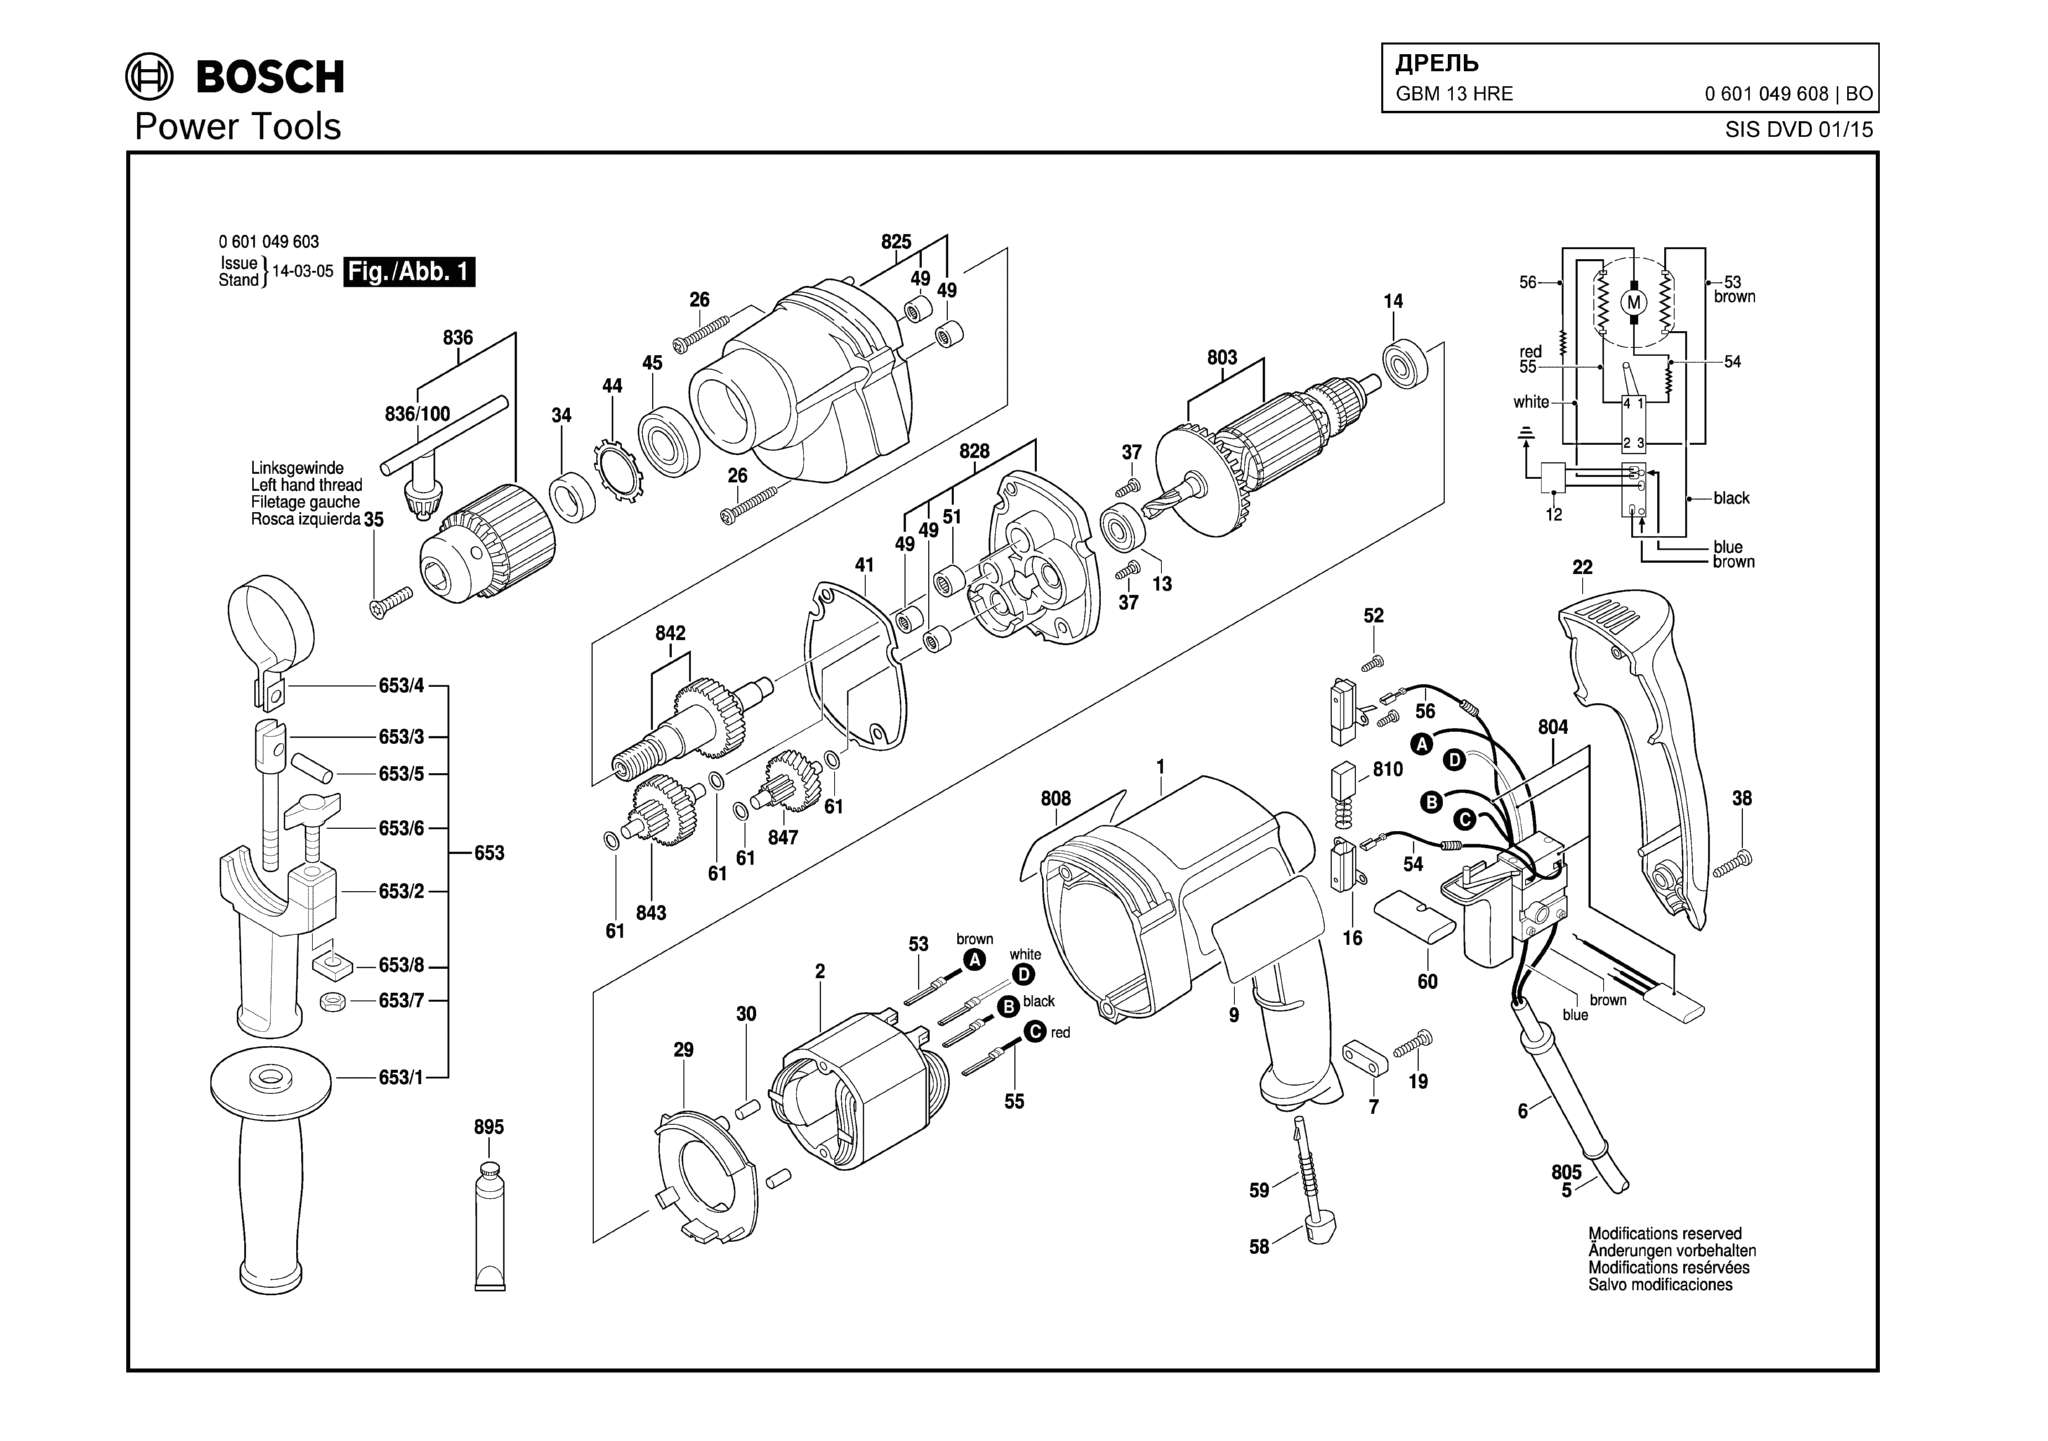 Запчасти, схема и деталировка Bosch GBM 13 HRE (ТИП 0601049608)